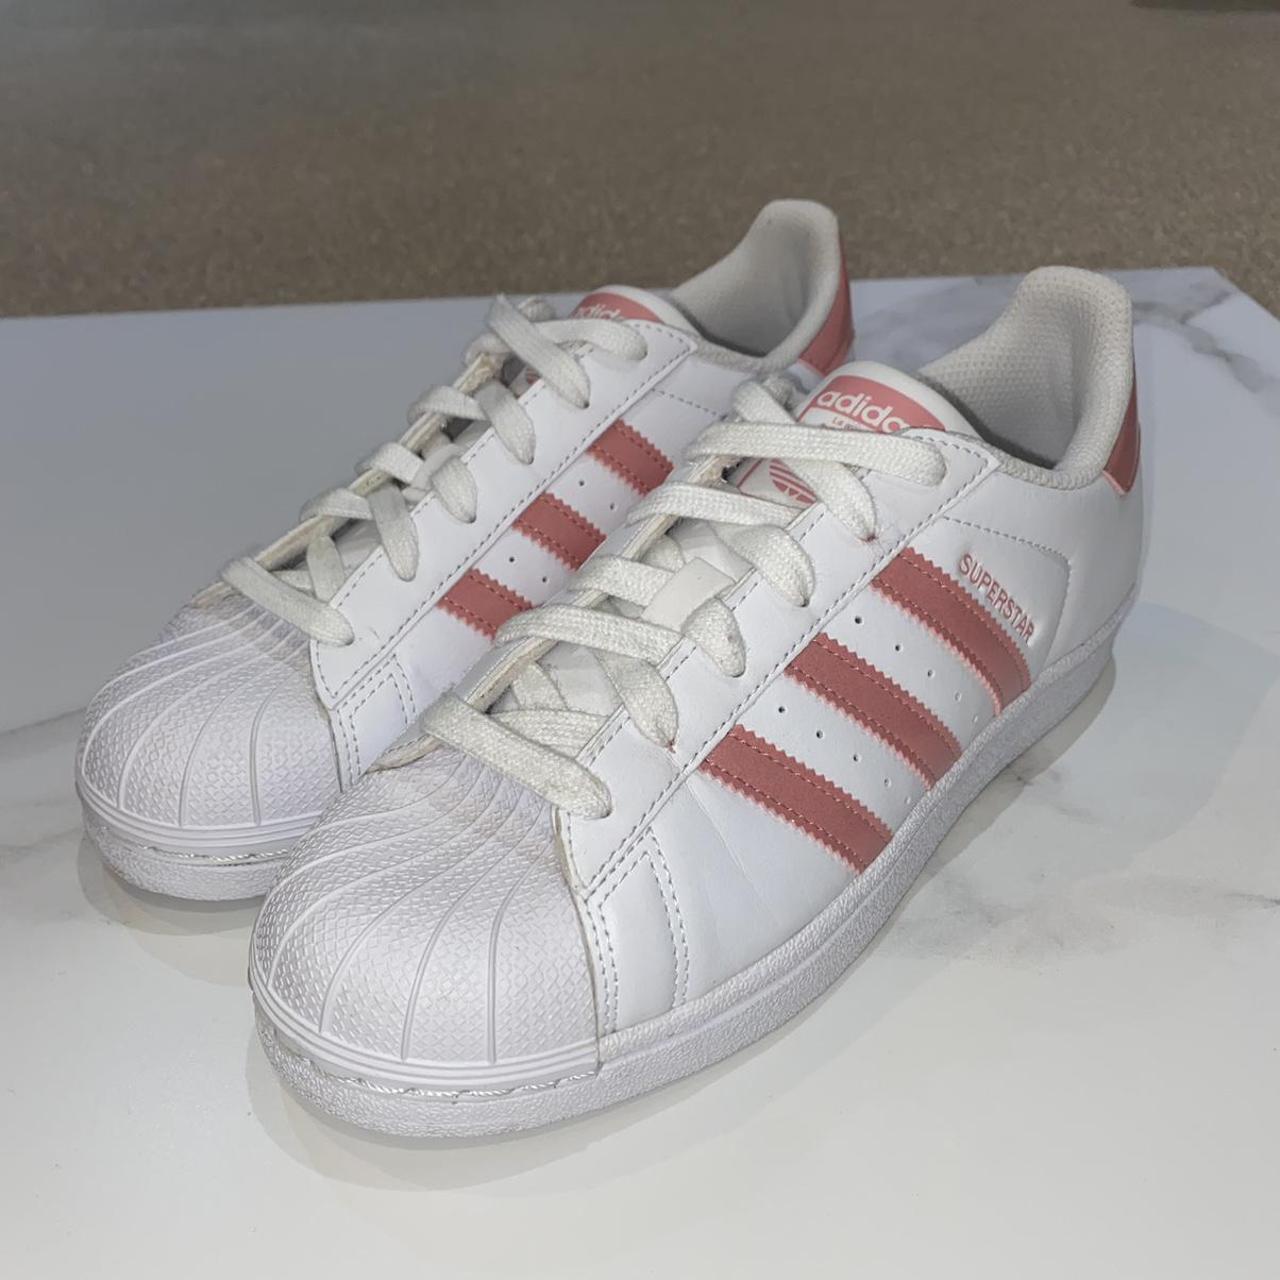 Adidas Original Superstar shoes Size uk5 (eu... - Depop